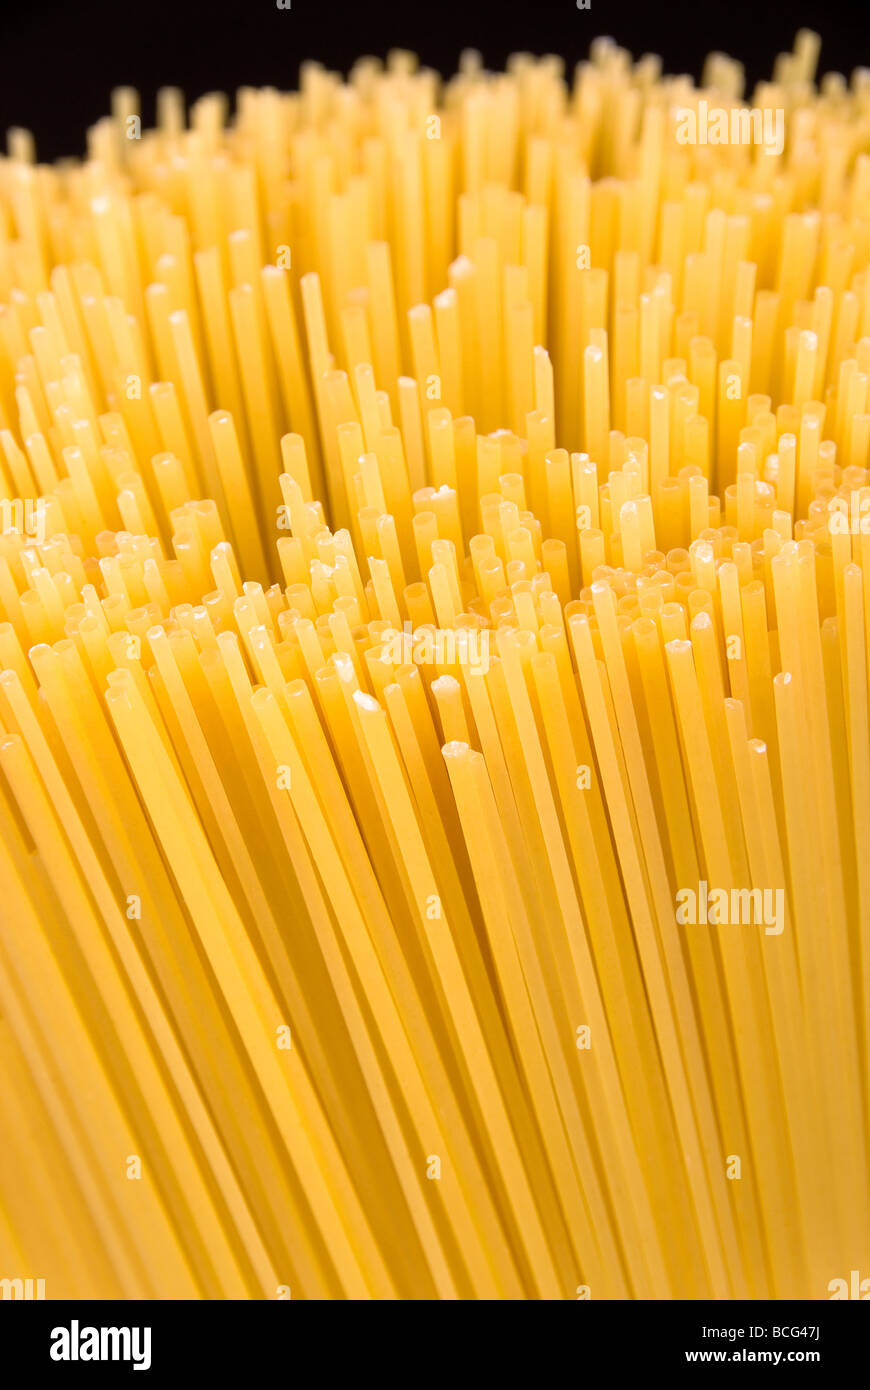 Ein Stapel von rohen ungekochten Spaghette Nudeln Stockfoto